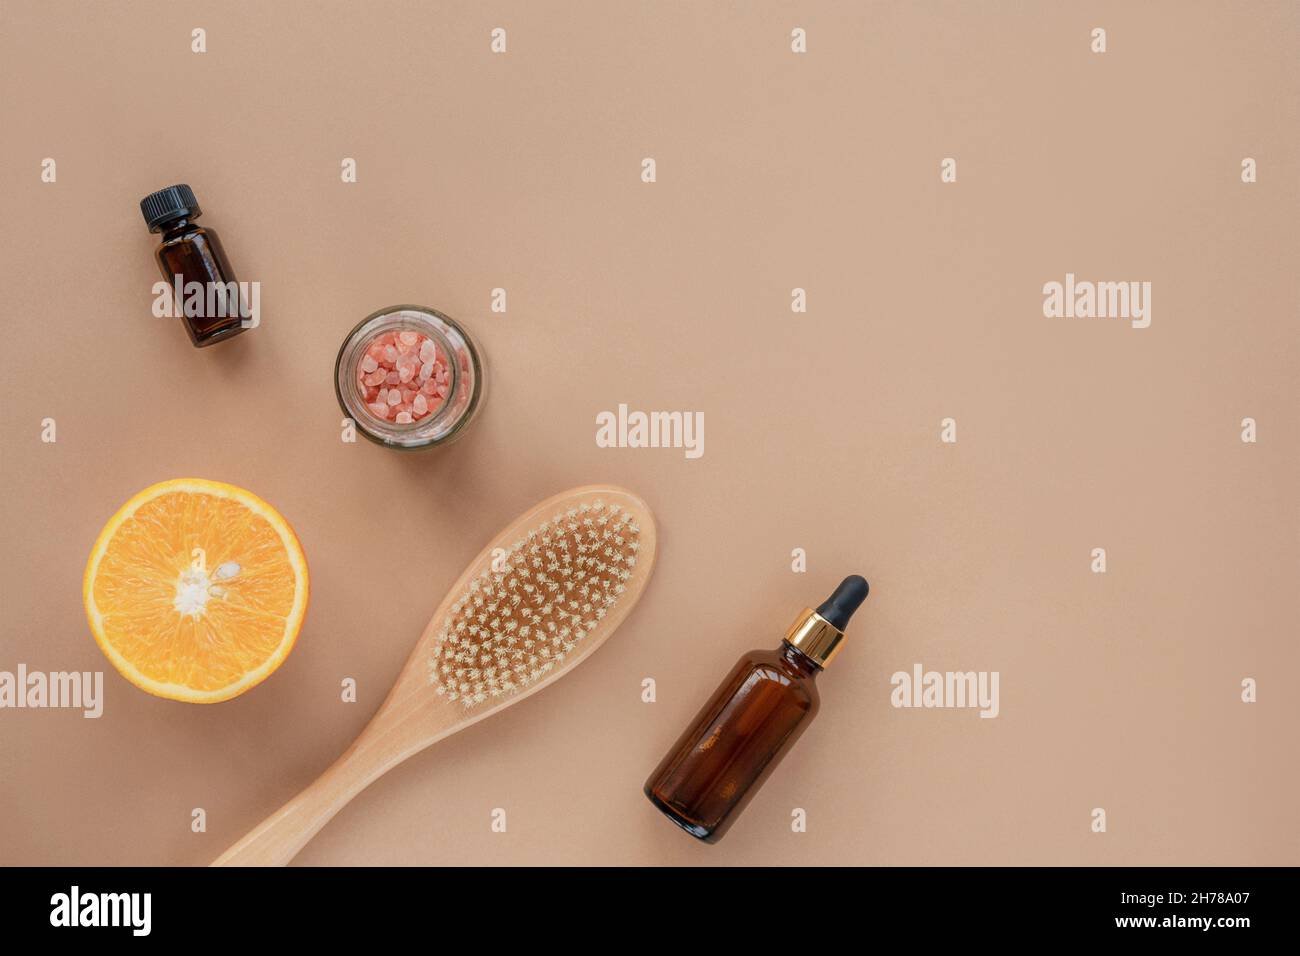 Natürliche Bio-Kosmetikprodukte, Öl, Serumflasche, Pinsel, himalaya-Rosa-Salz im Glas und orangefarbene Hälften auf beigem Hintergrund. Draufsicht, flaches Lay, c Stockfoto